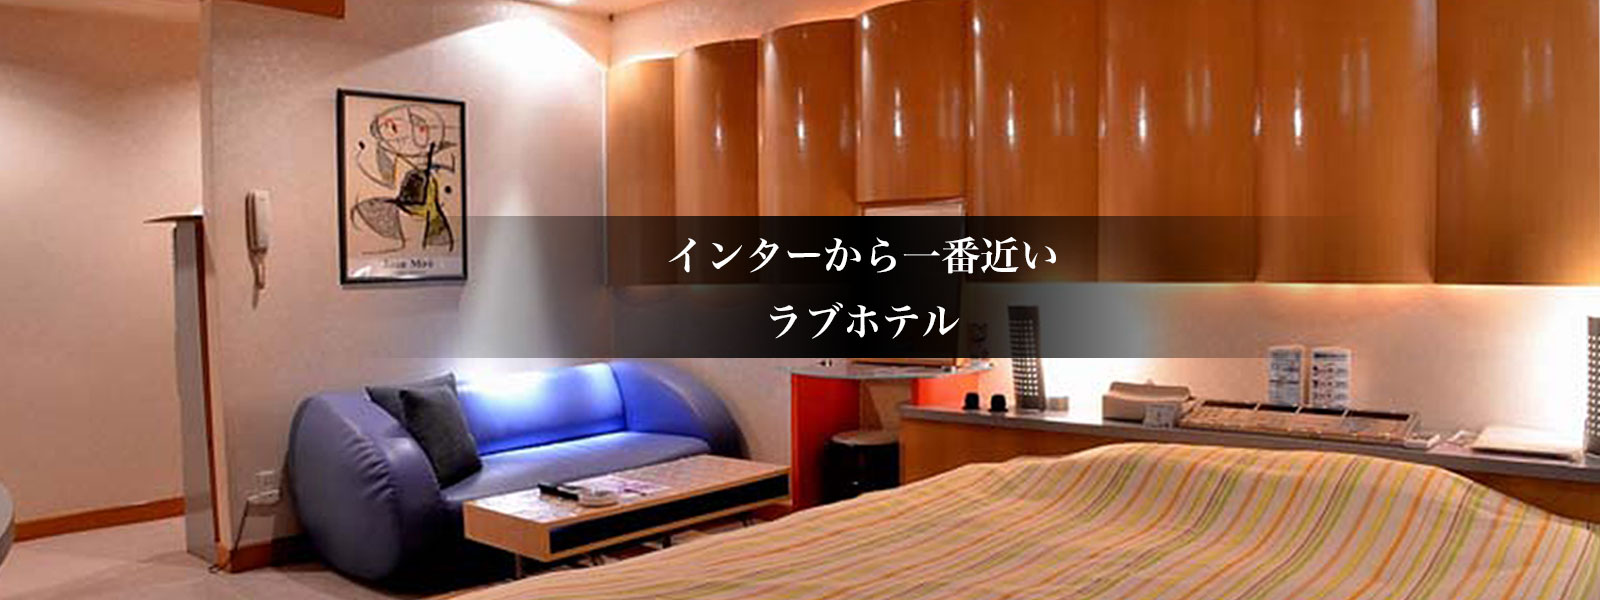 公式 ホテル 水色の詩 宮の沢 手稲 琴似のラブホテル